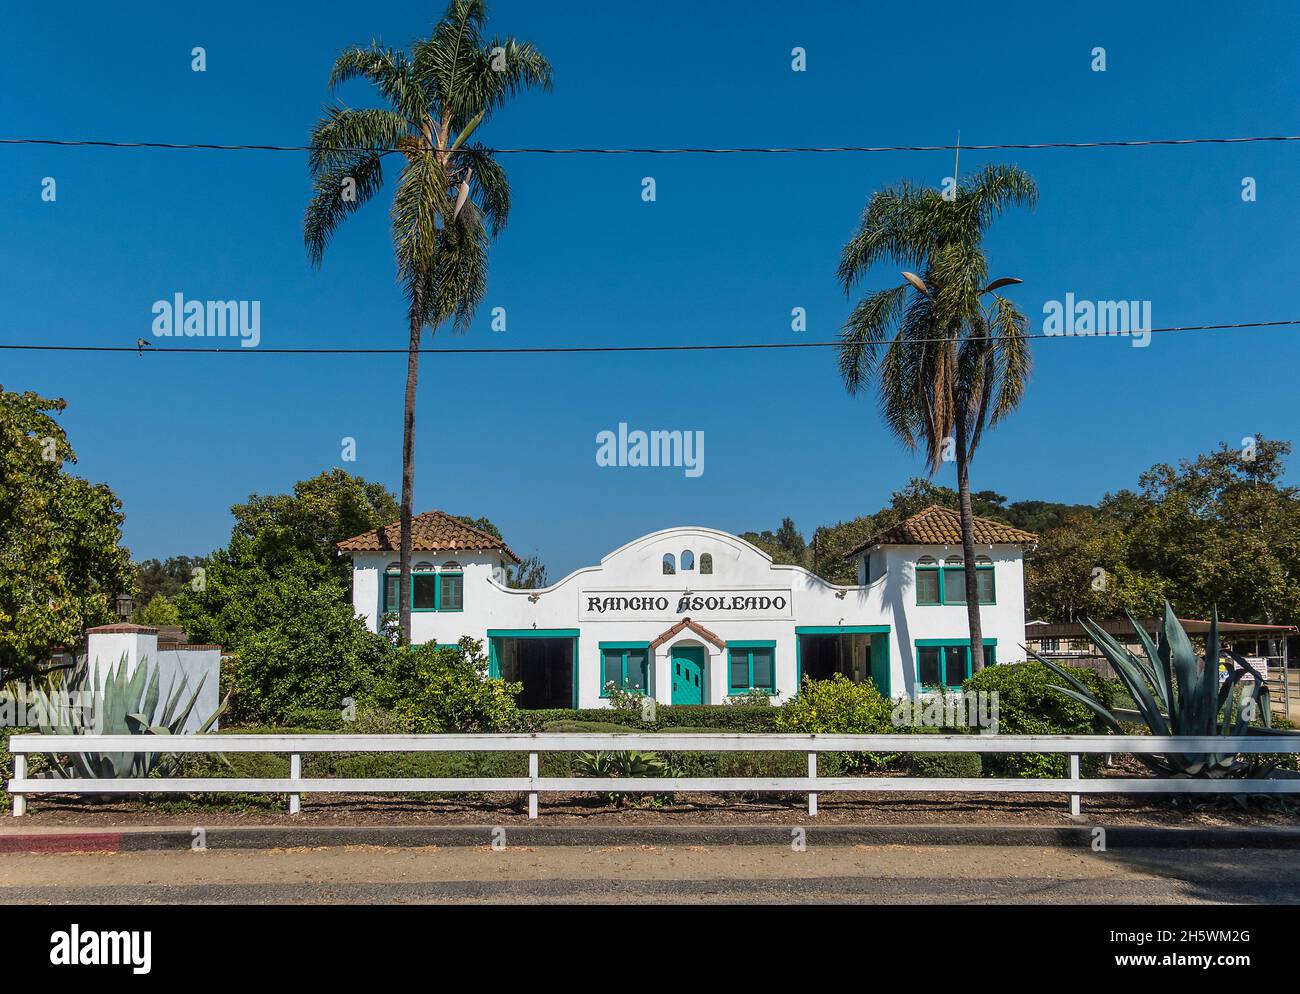 Un'elevazione frontale dell'architettura in stile Missione di Rancho Asoleado un centro equino nella Contea di Santa Barbara, California. Foto Stock